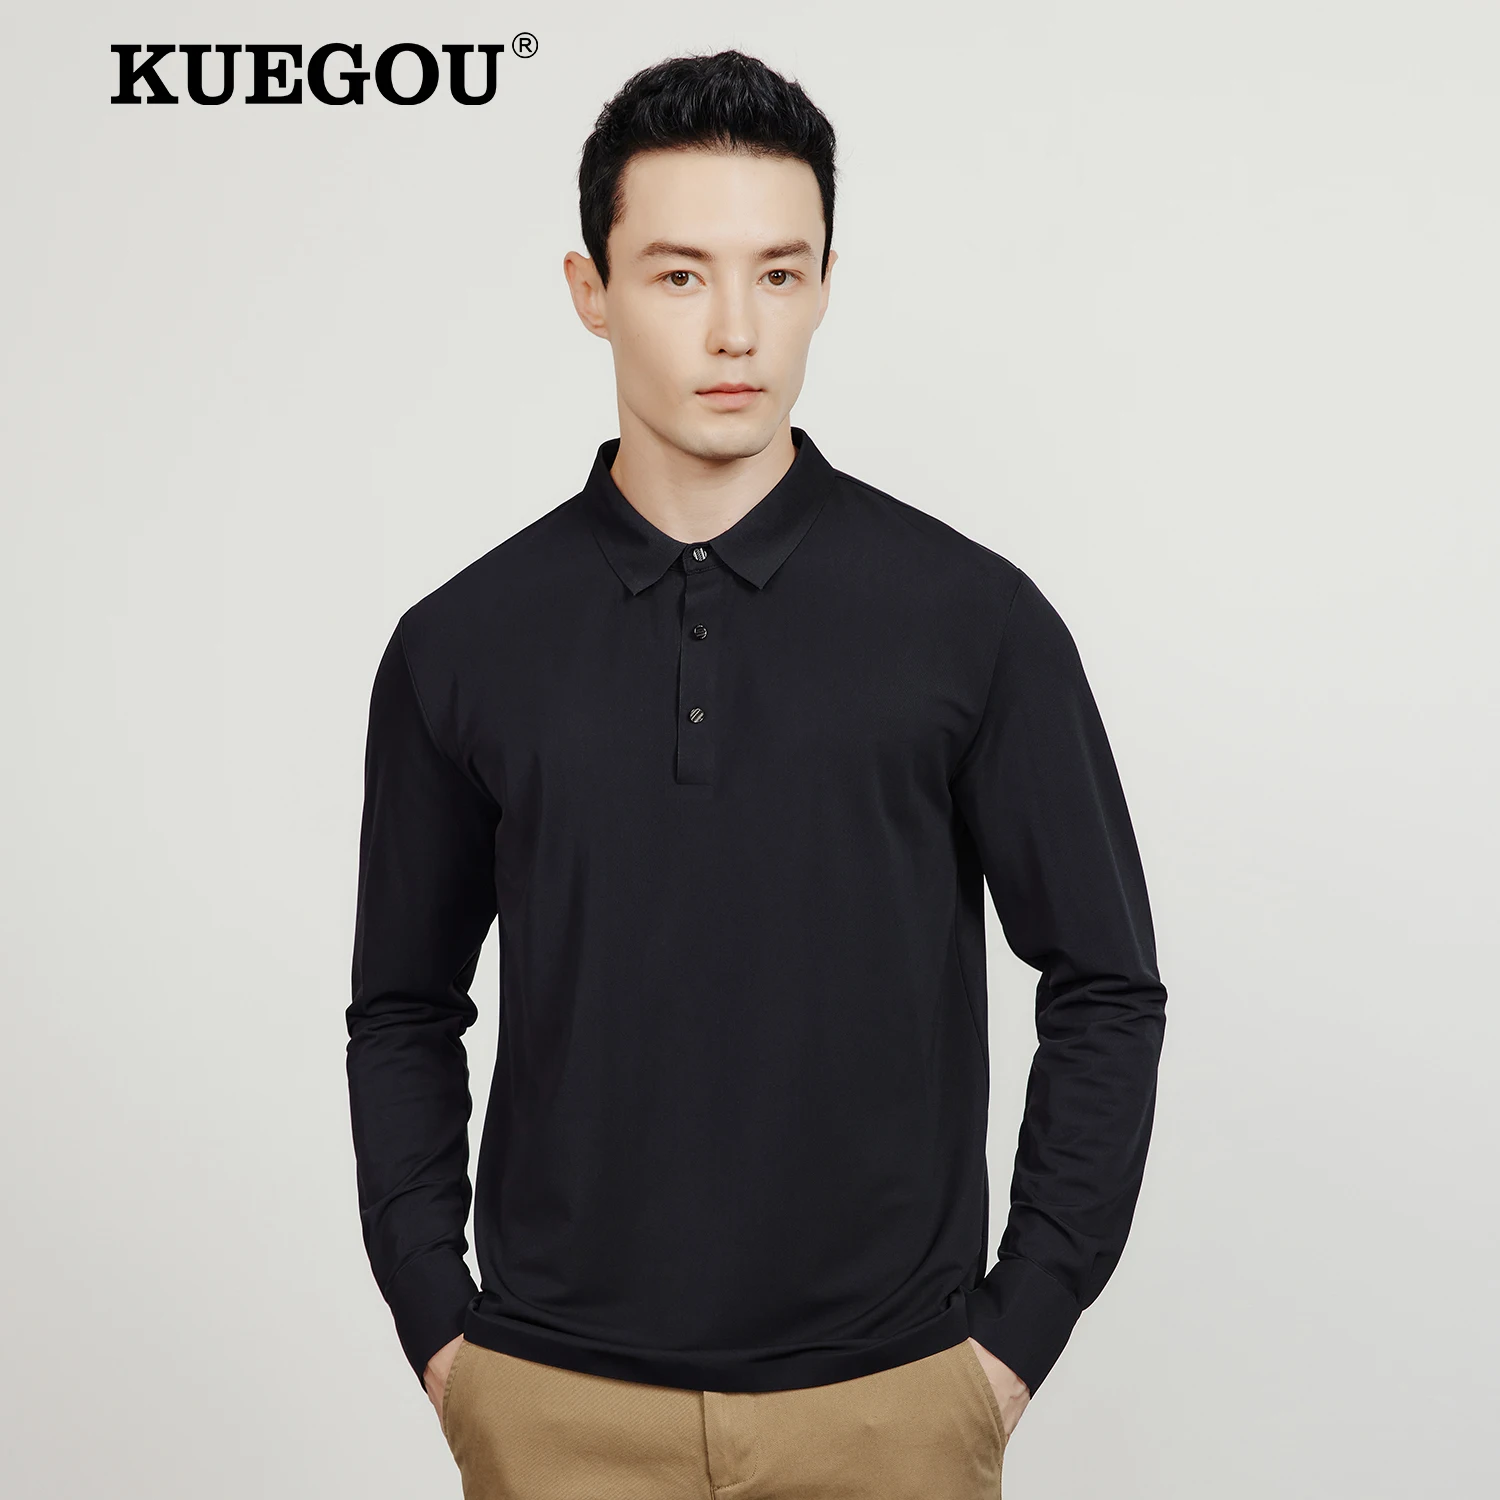 

KUEGOU 2022 осень новая мужская рубашка поло с длинным рукавом мода высокого качества сплошной цвет полиамид спандекс топ плюс размер 55068